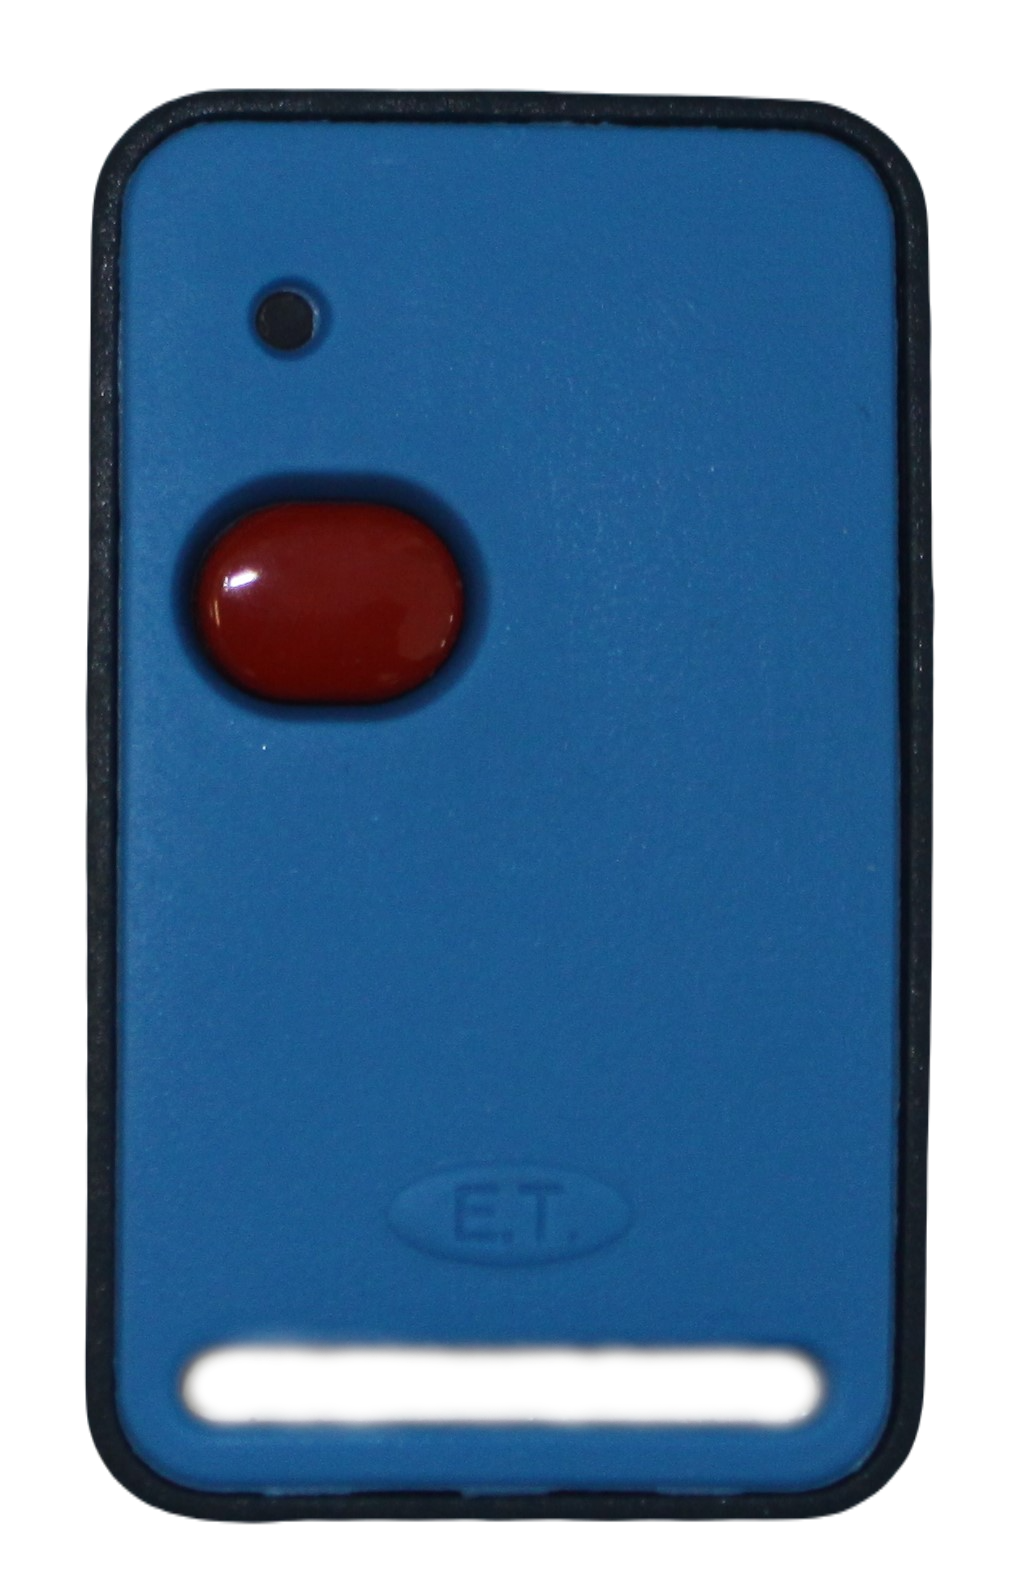 et-remote-1-button-remote